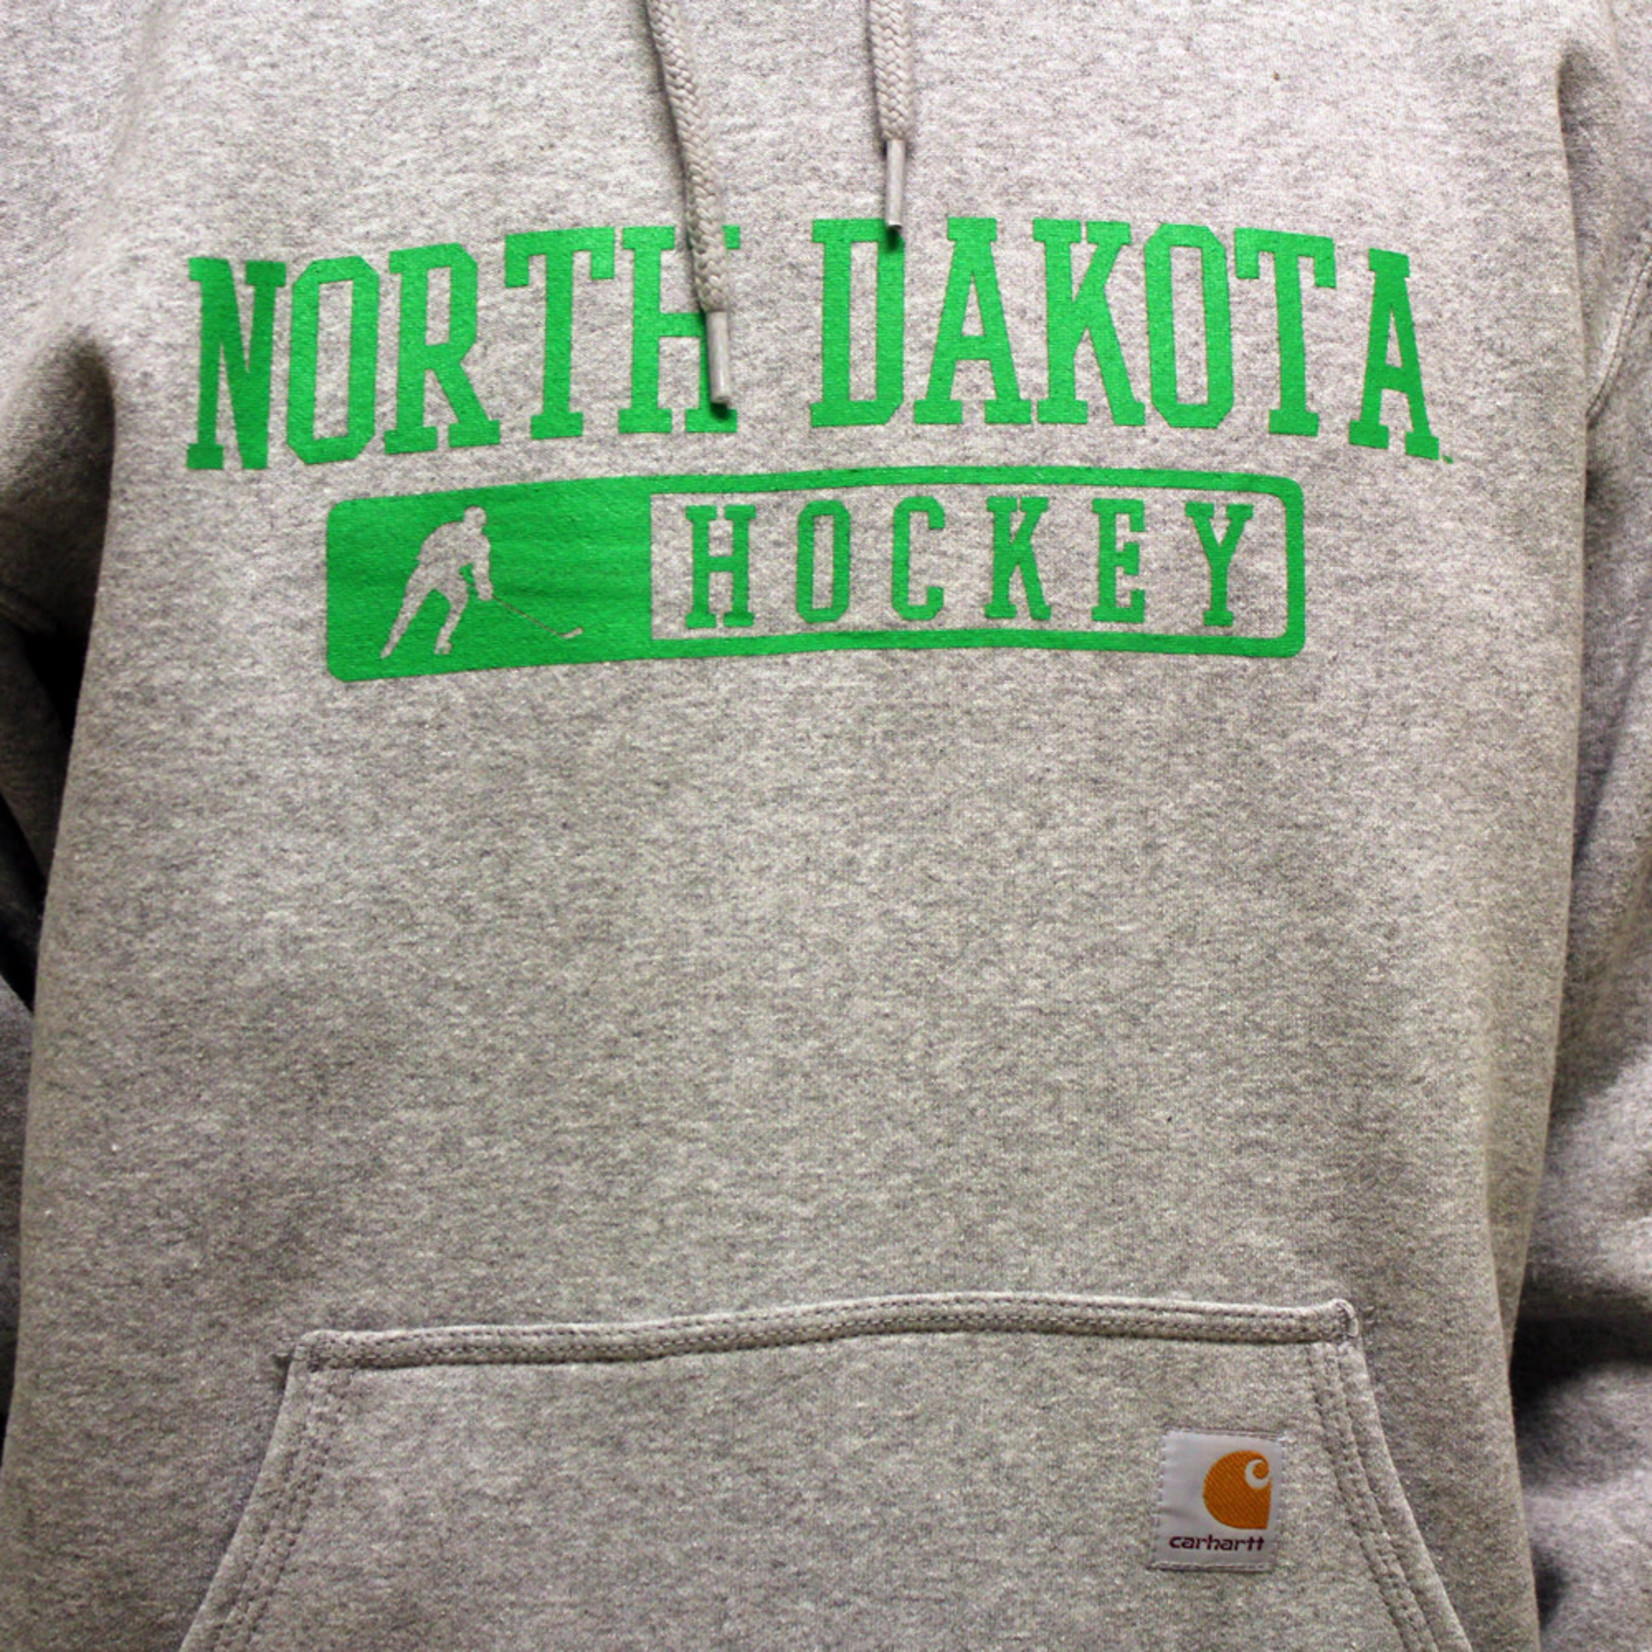 Carhartt North Dakota Hockey Hoodie